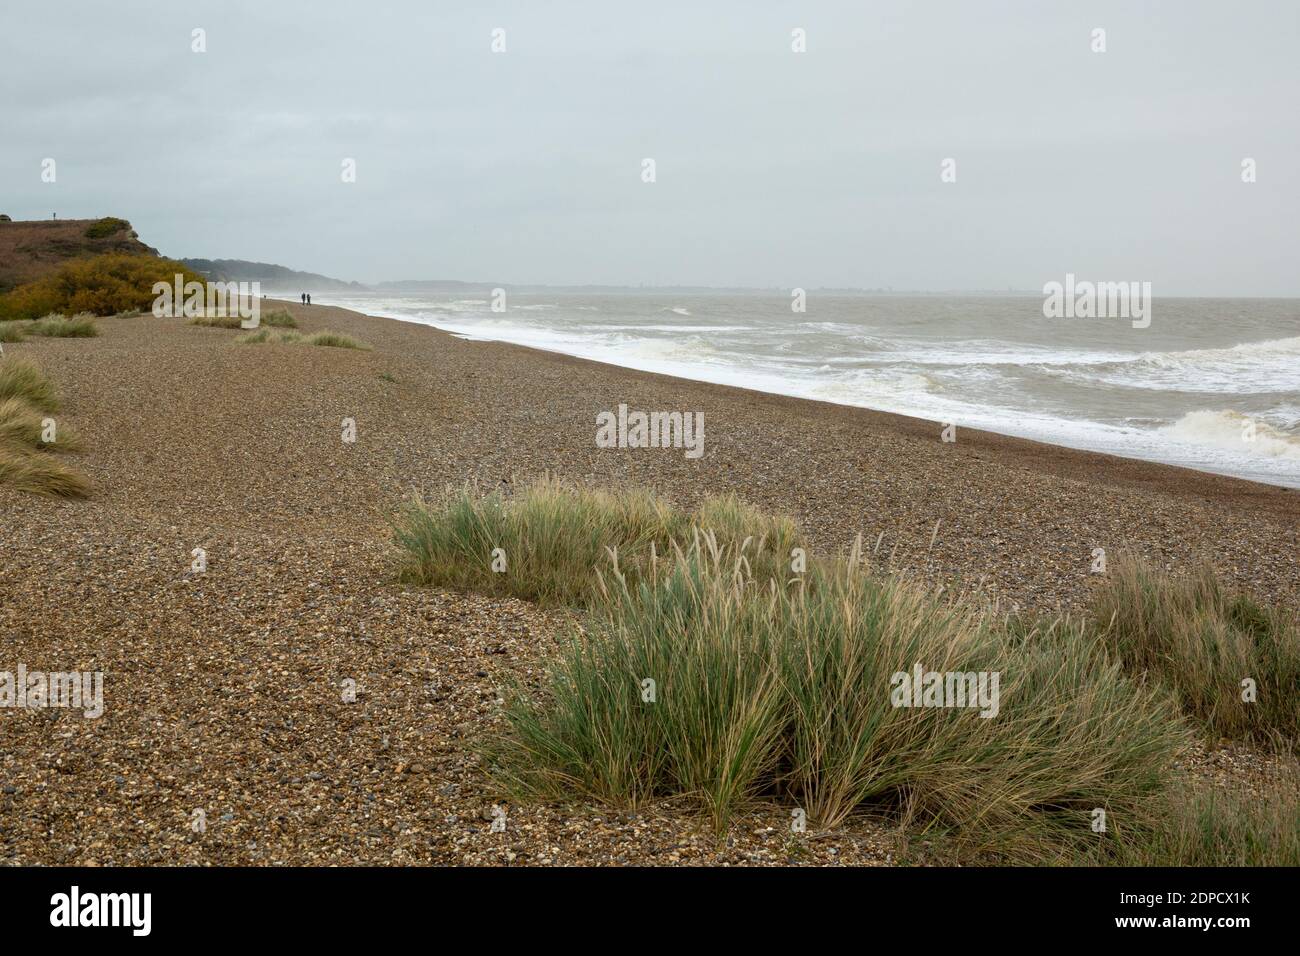 Marram grass shigle beach Minsmere beach Dunwich Stock Photo